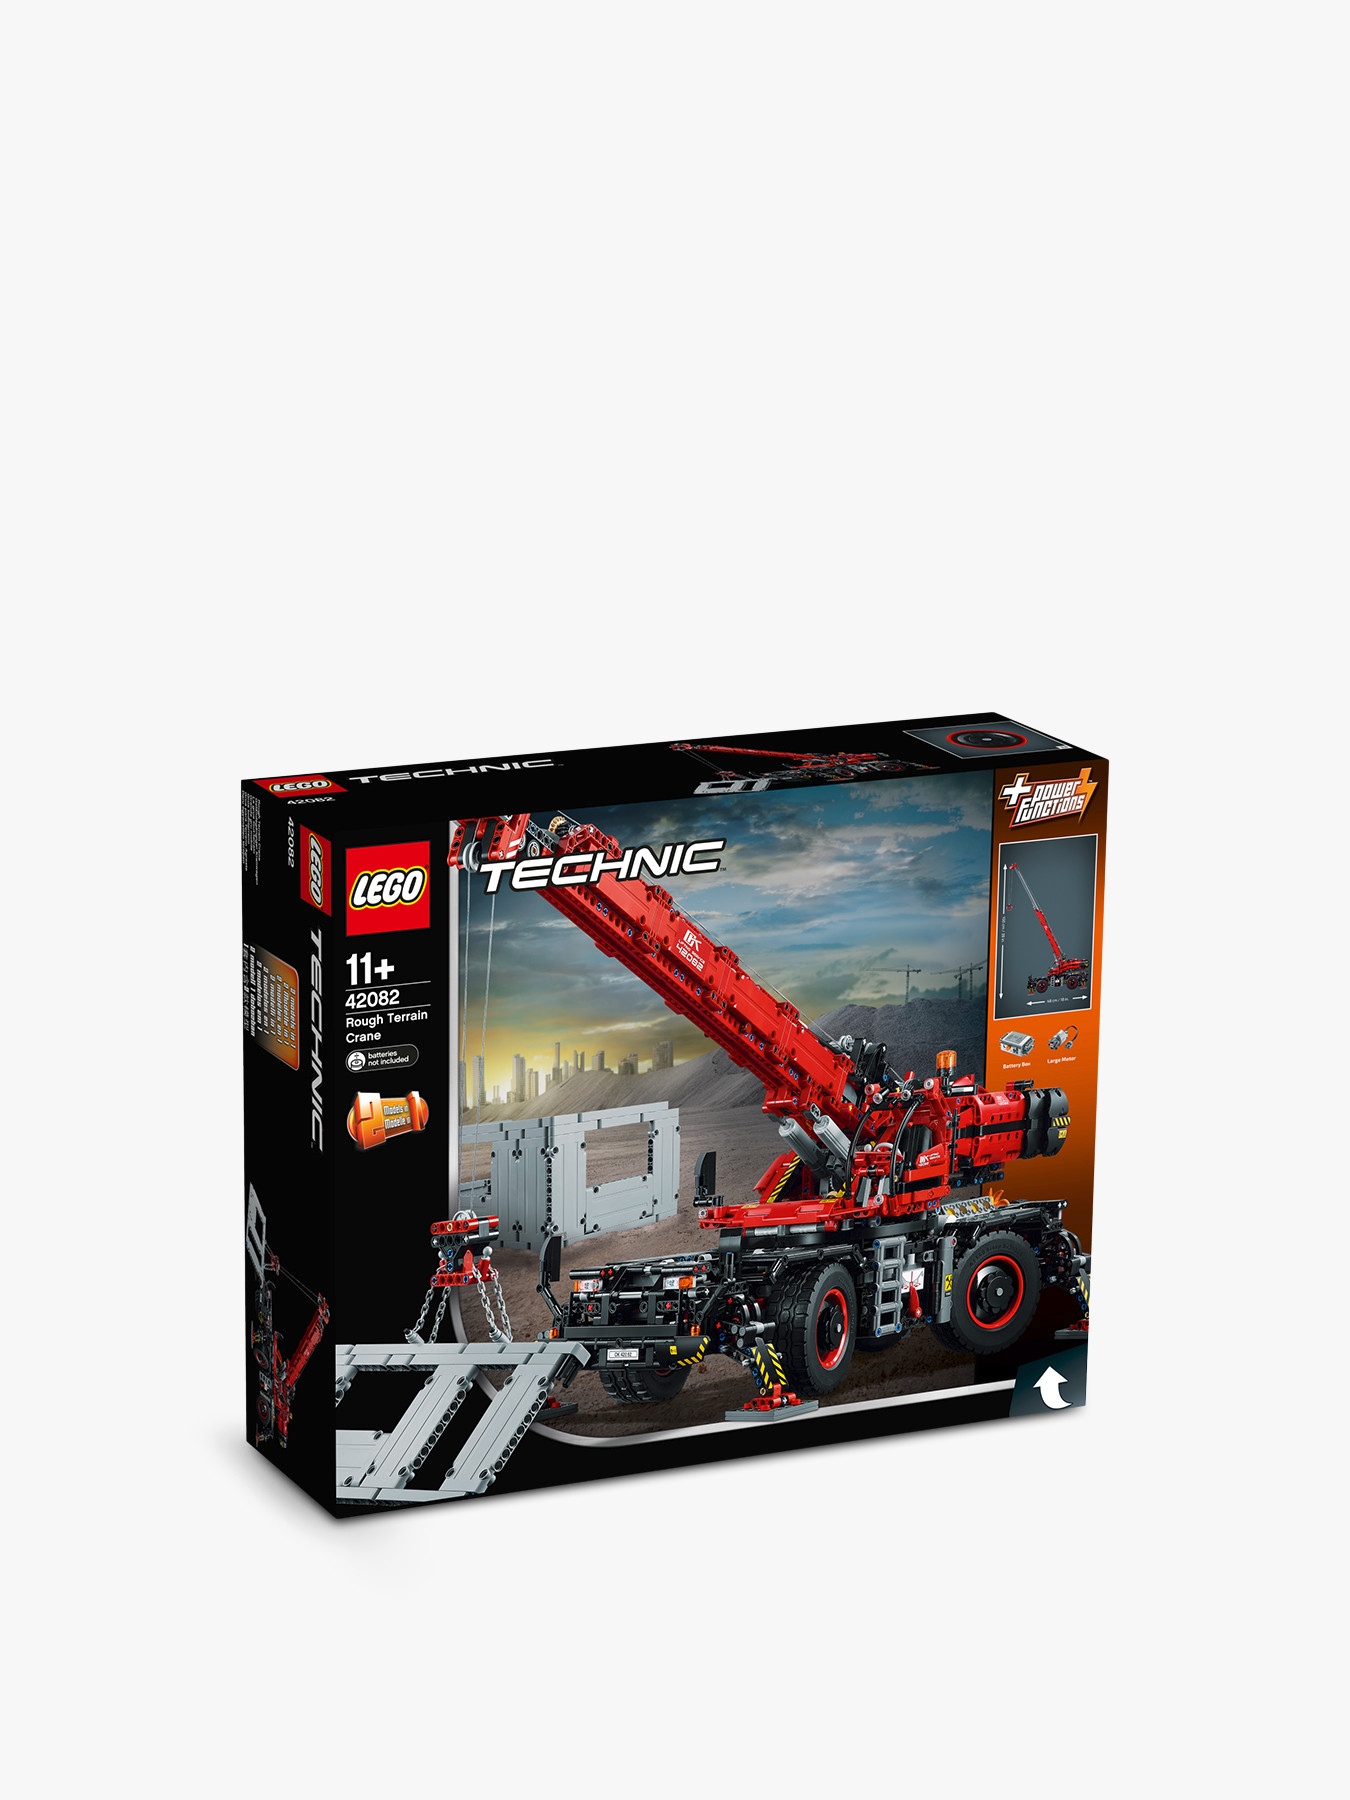 LEGO Technic Rough Terrain Crane | LEGO & Construction Toys | Fenwick